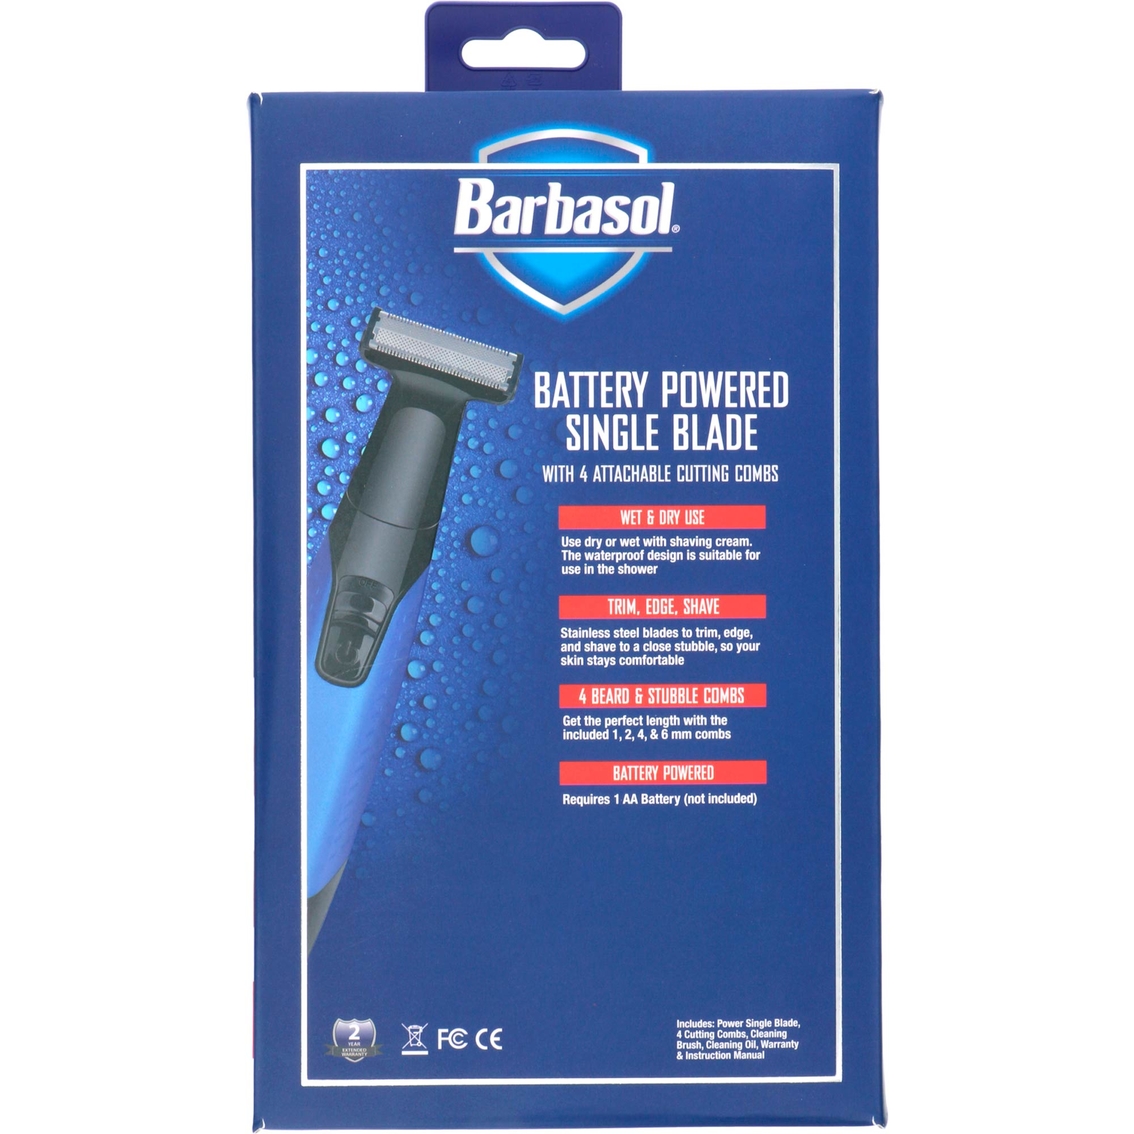 Barbasol Battery Powered Body Groomer - Image 2 of 6